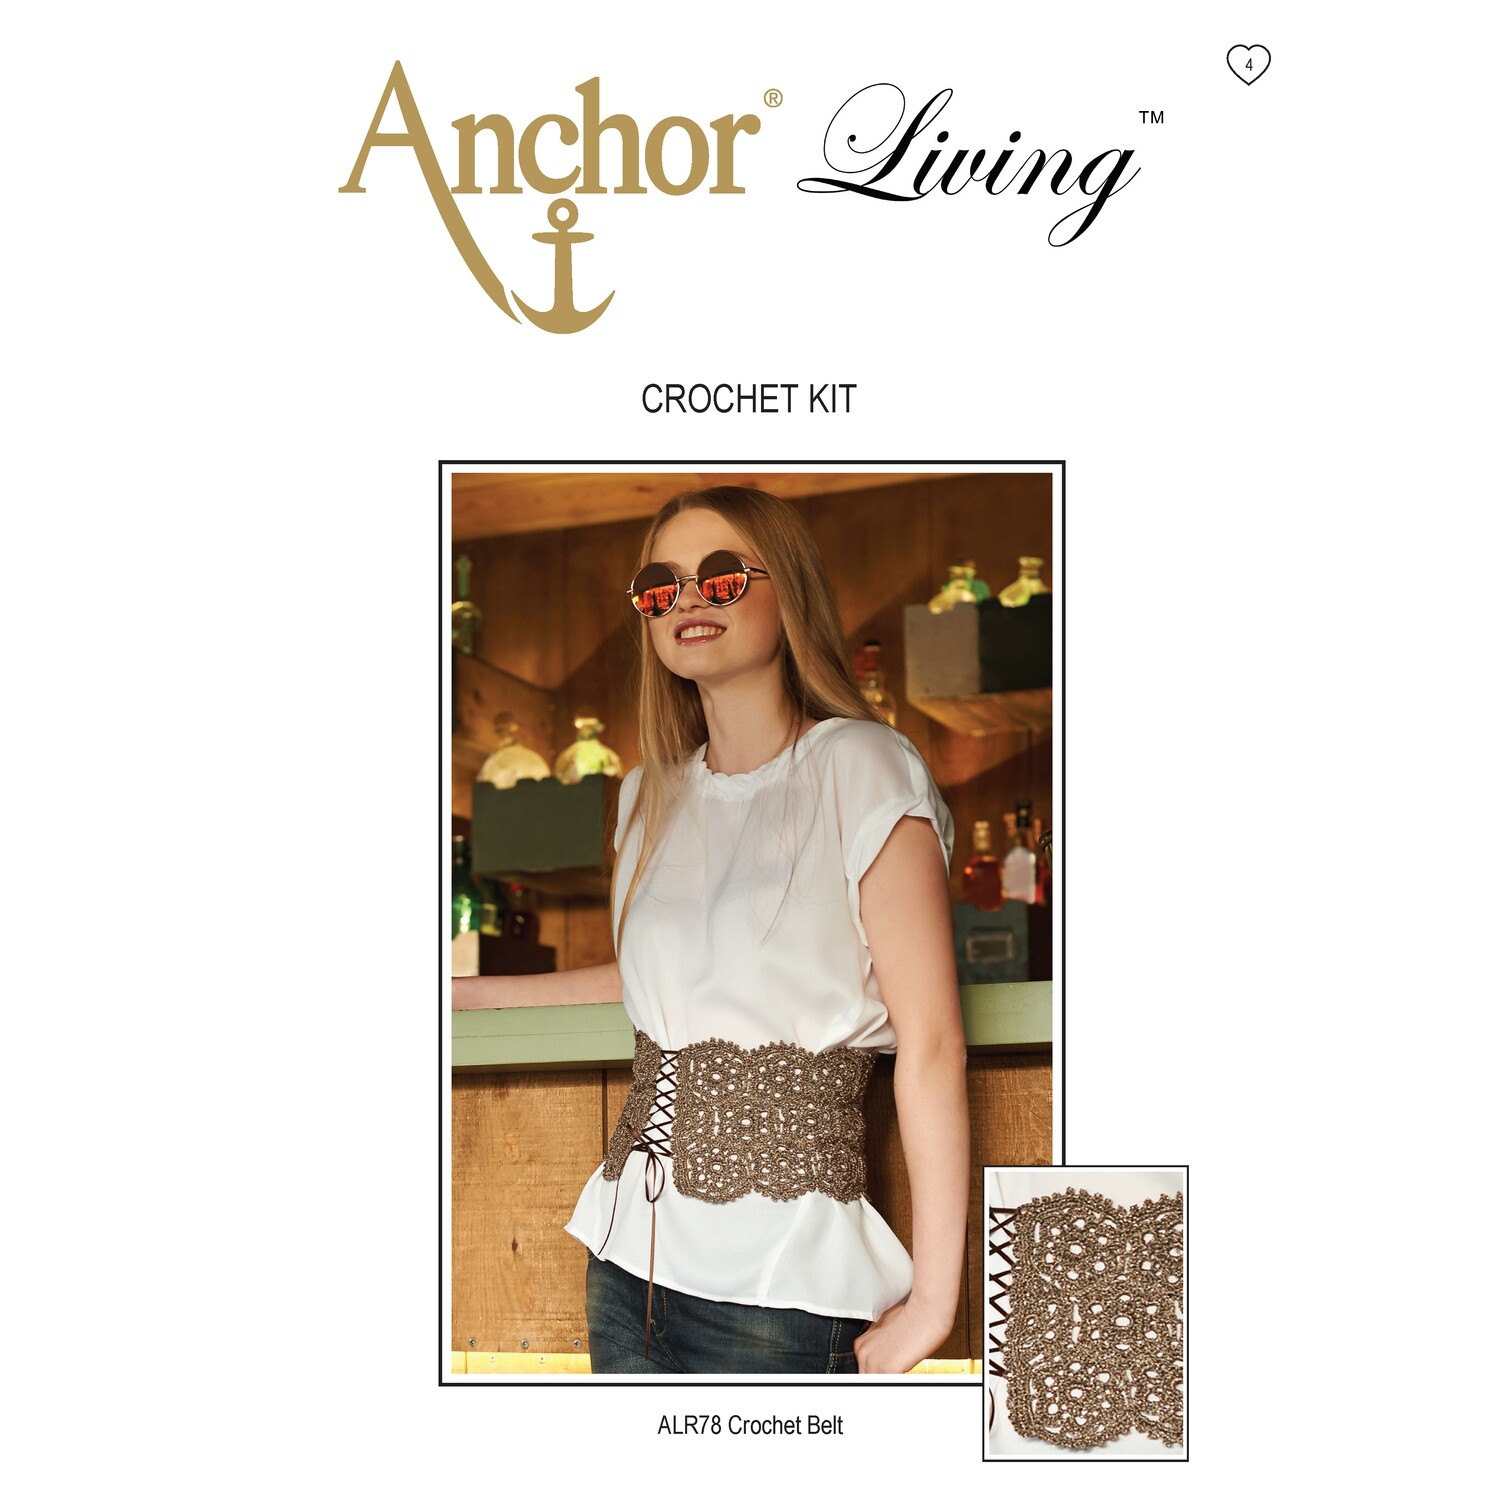 Anchor Living Crochet Kit - Crochet Belt